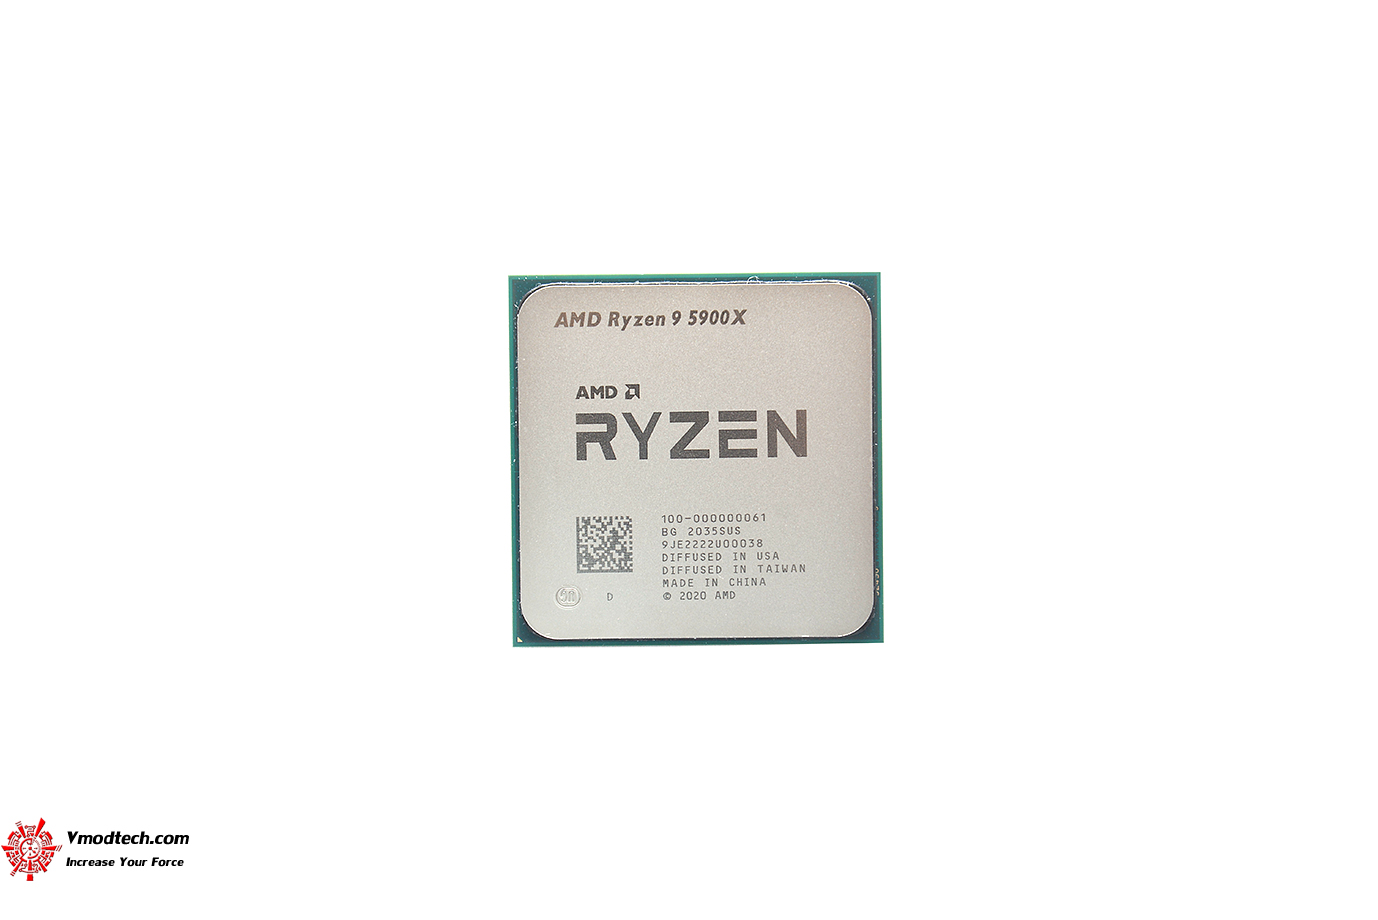 dsc 6577 AMD RYZEN 9 5900X PROCESSOR REVIEW